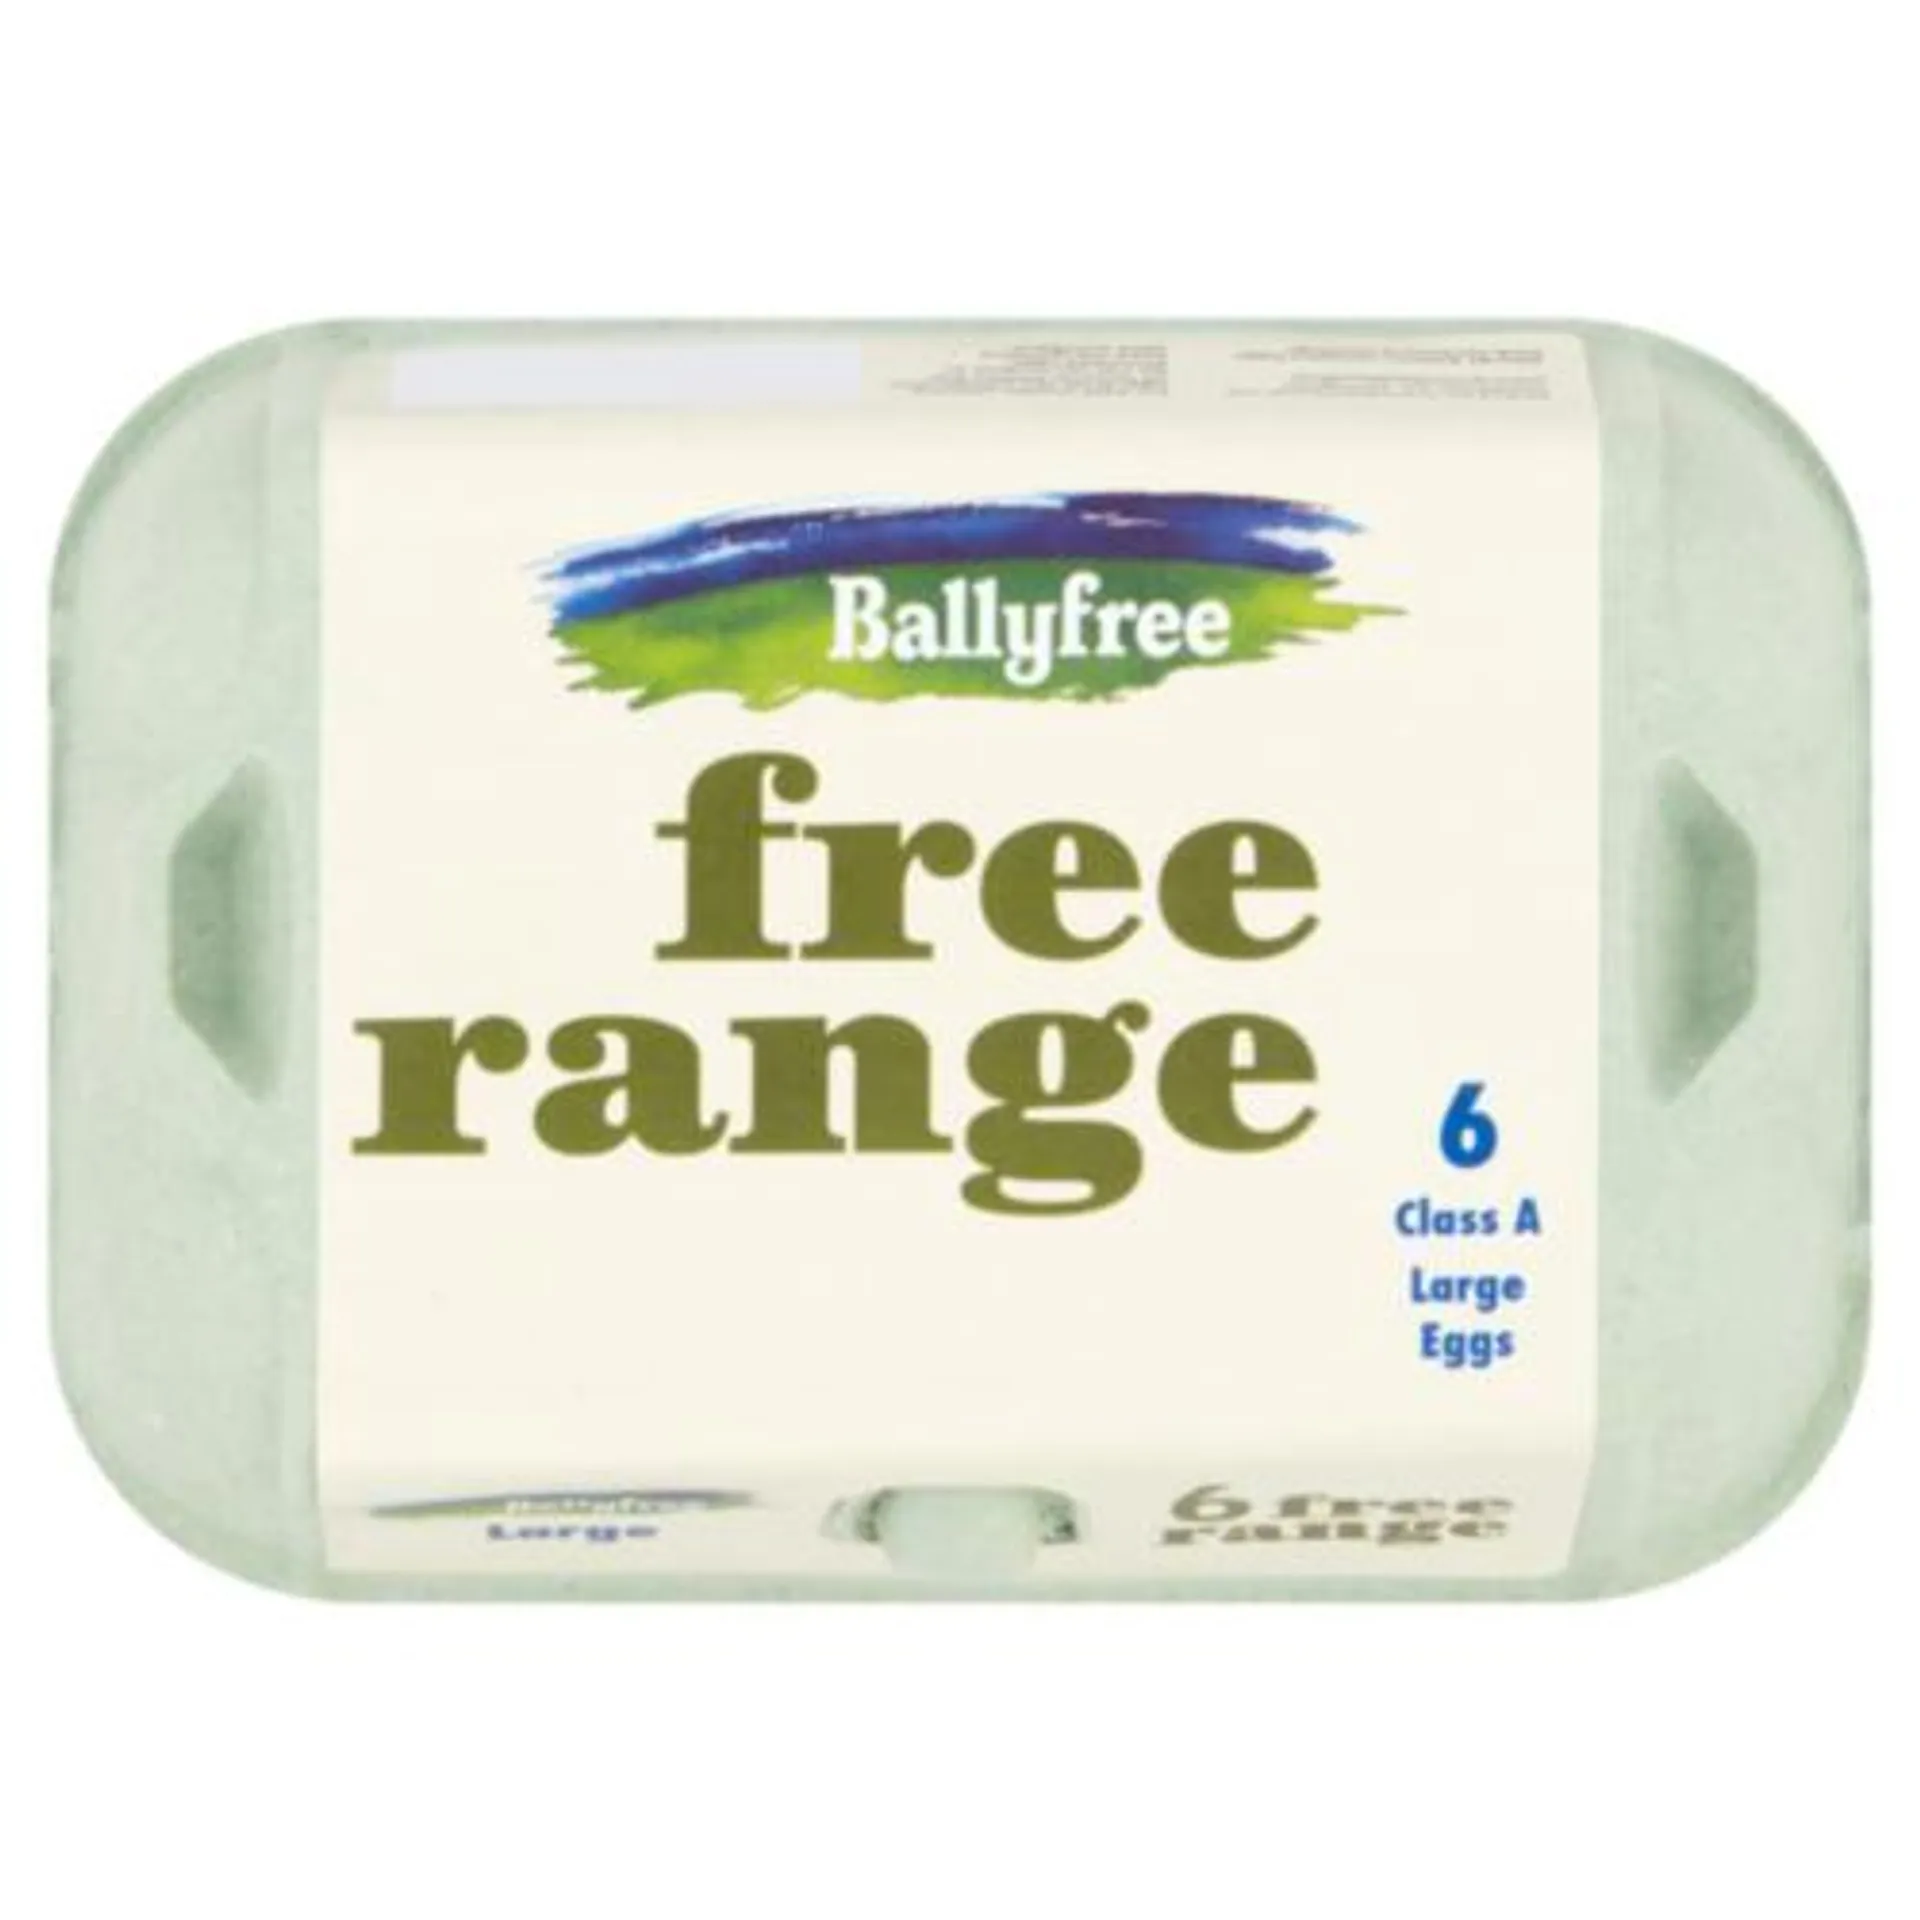 Ballyfree Large Free Range Eggs